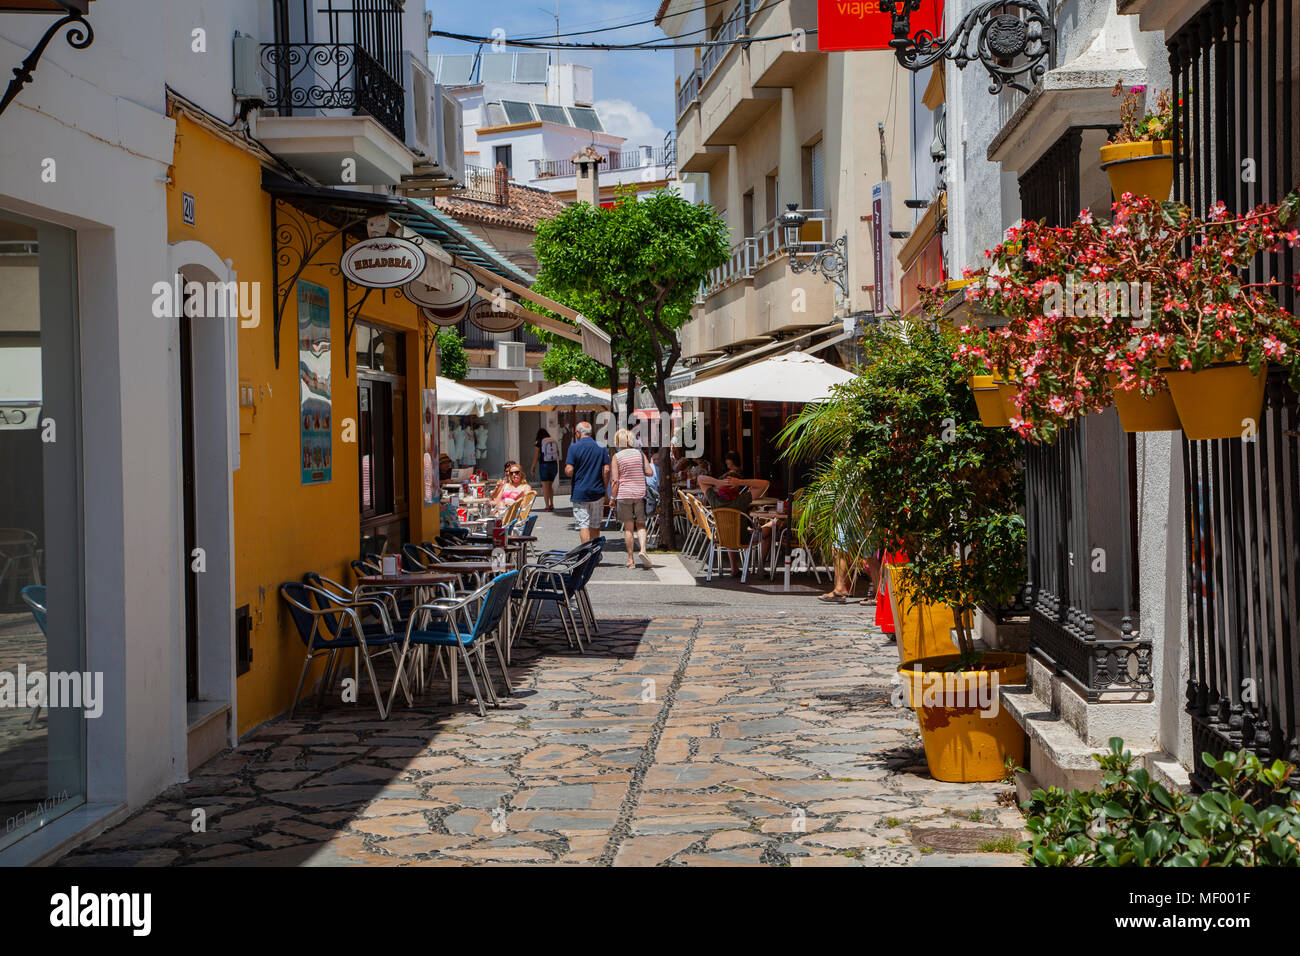 Estepona, Malaga, Spanien: Eine bunte Straße Szene: Touristen durchsuchen Sie das lokale Restaurants Stockfoto